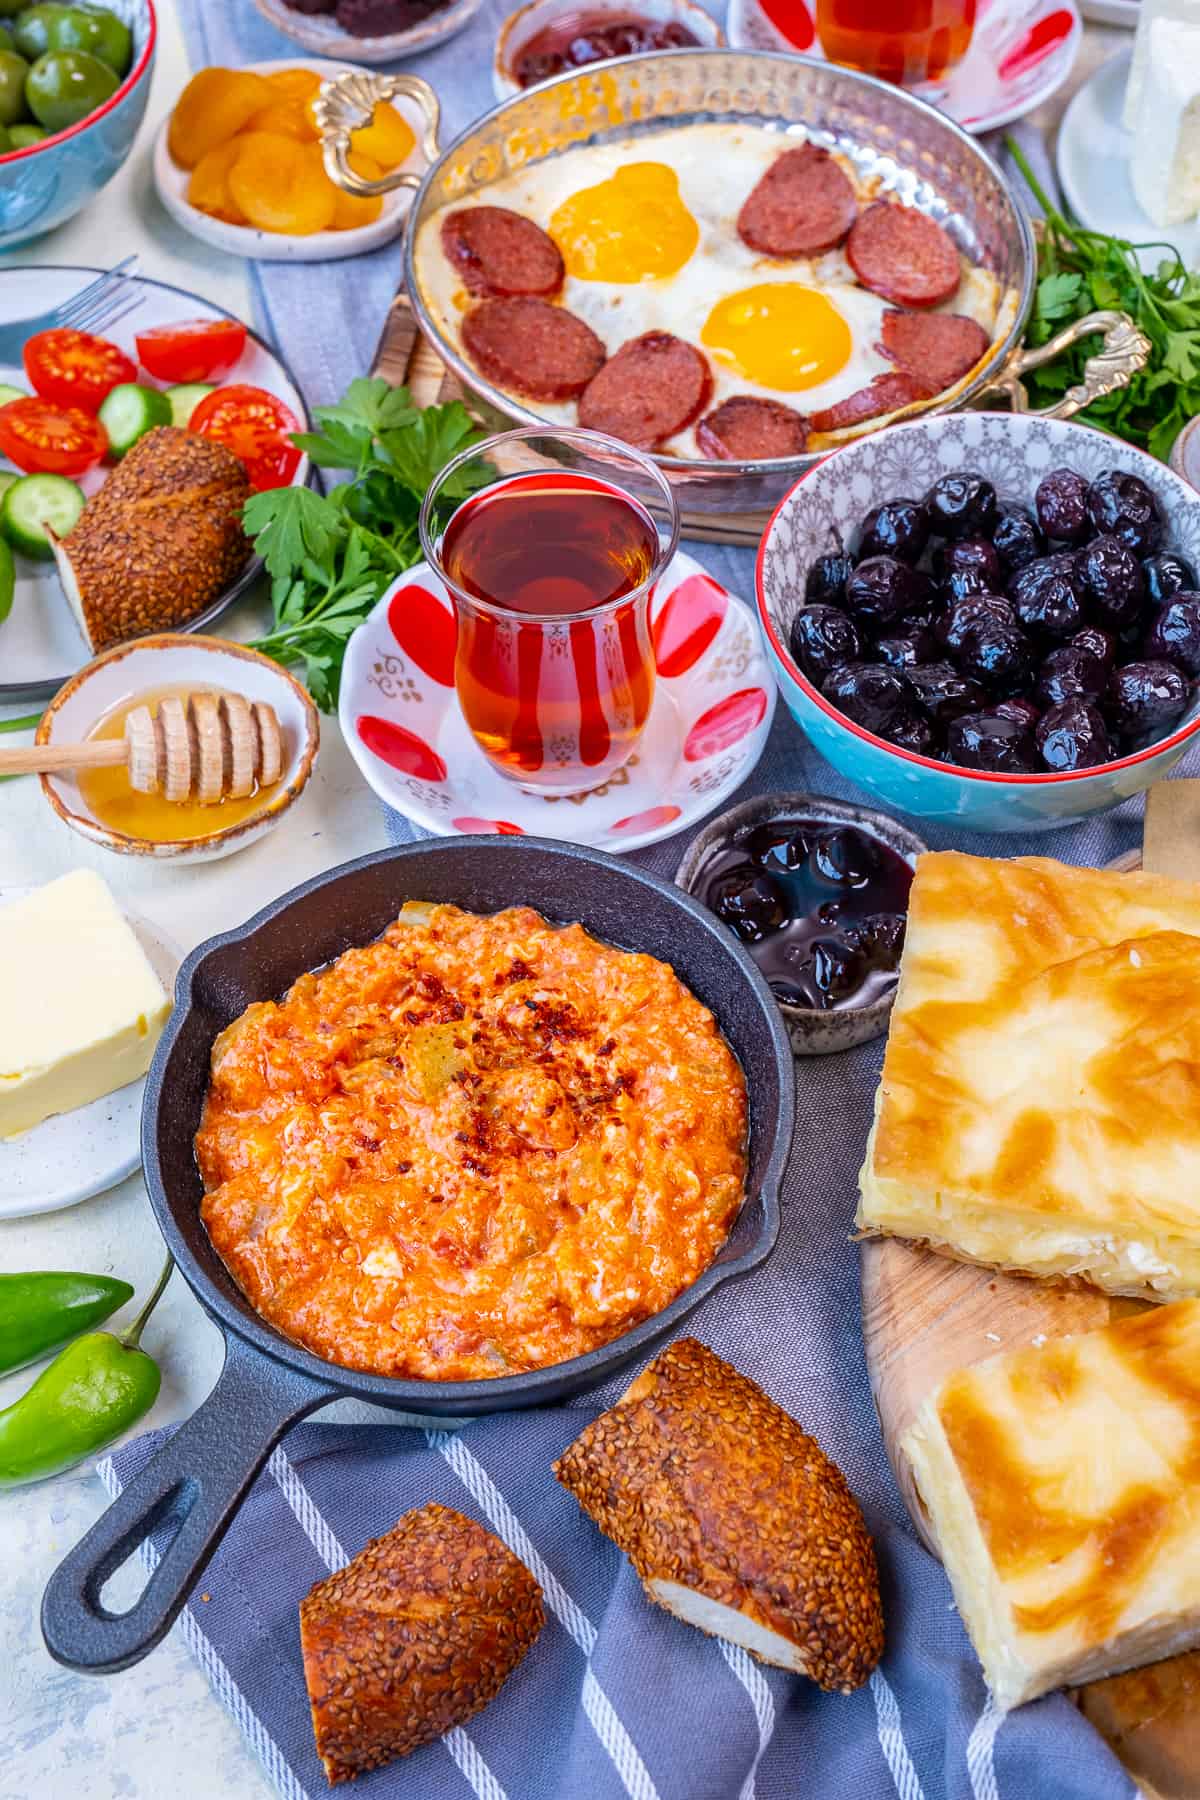 土耳其早餐有menemen，鸡蛋和sujuk，橄榄，果酱，simit, borek，黄油，蜂蜜，沙拉和土耳其茶。